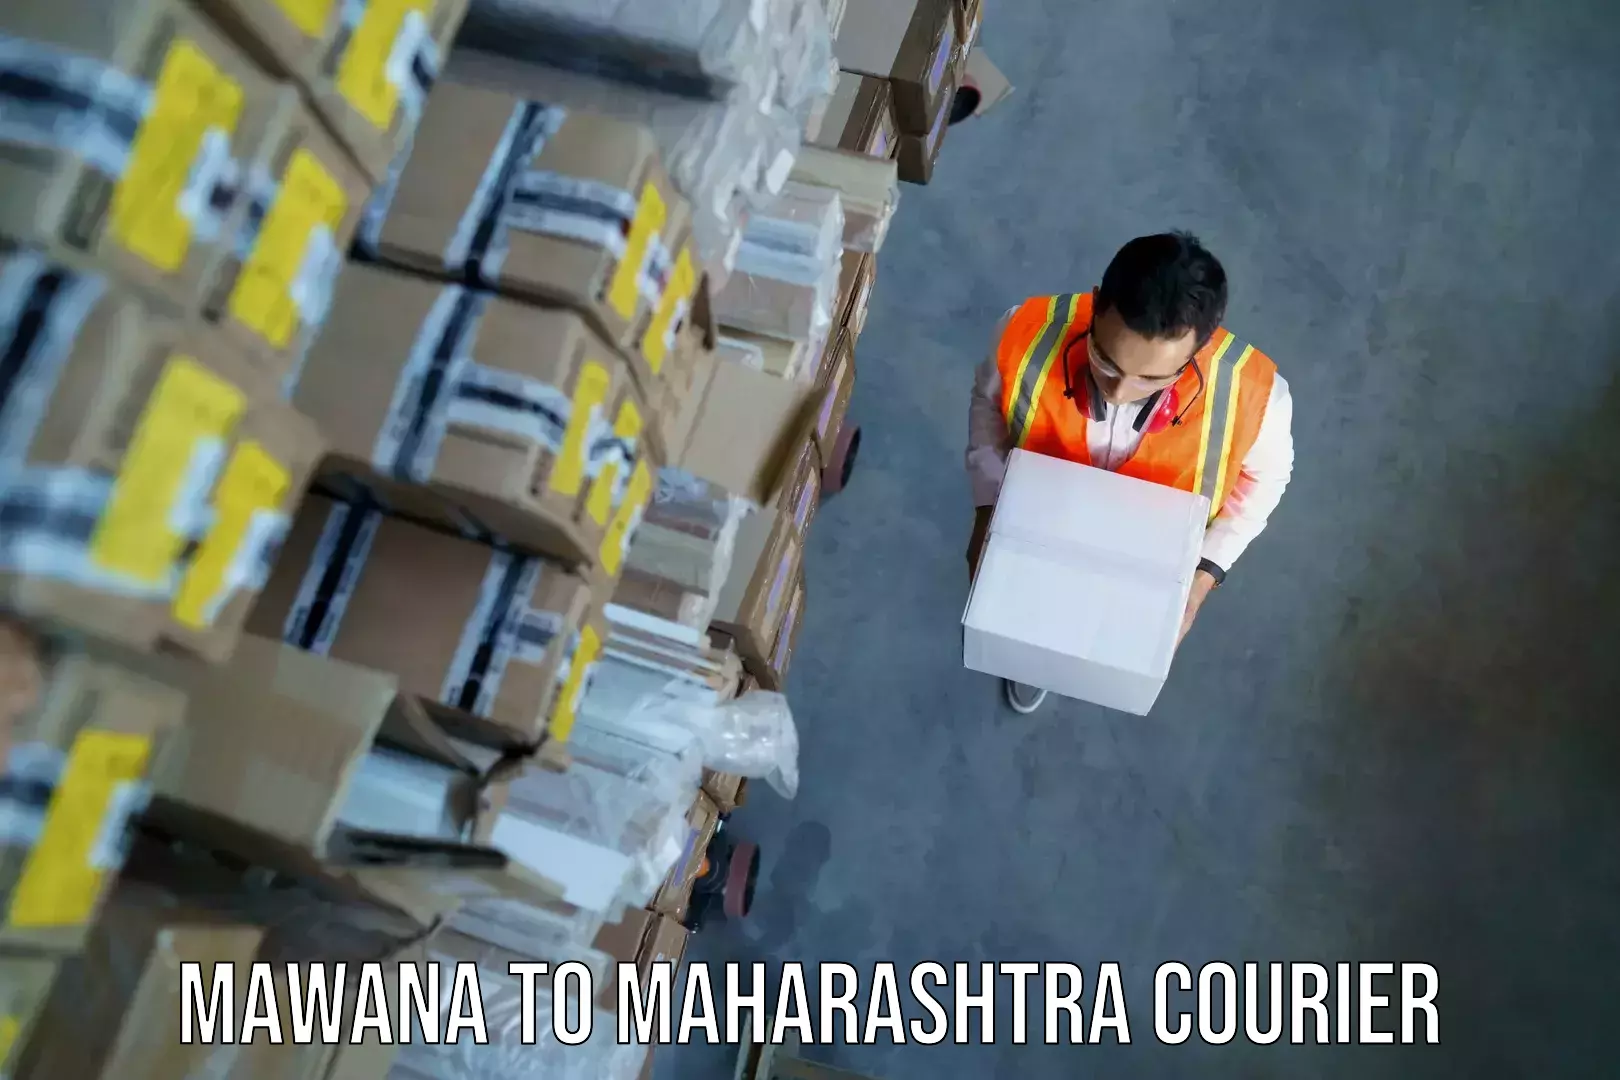 Luggage transport consultancy Mawana to Maharashtra